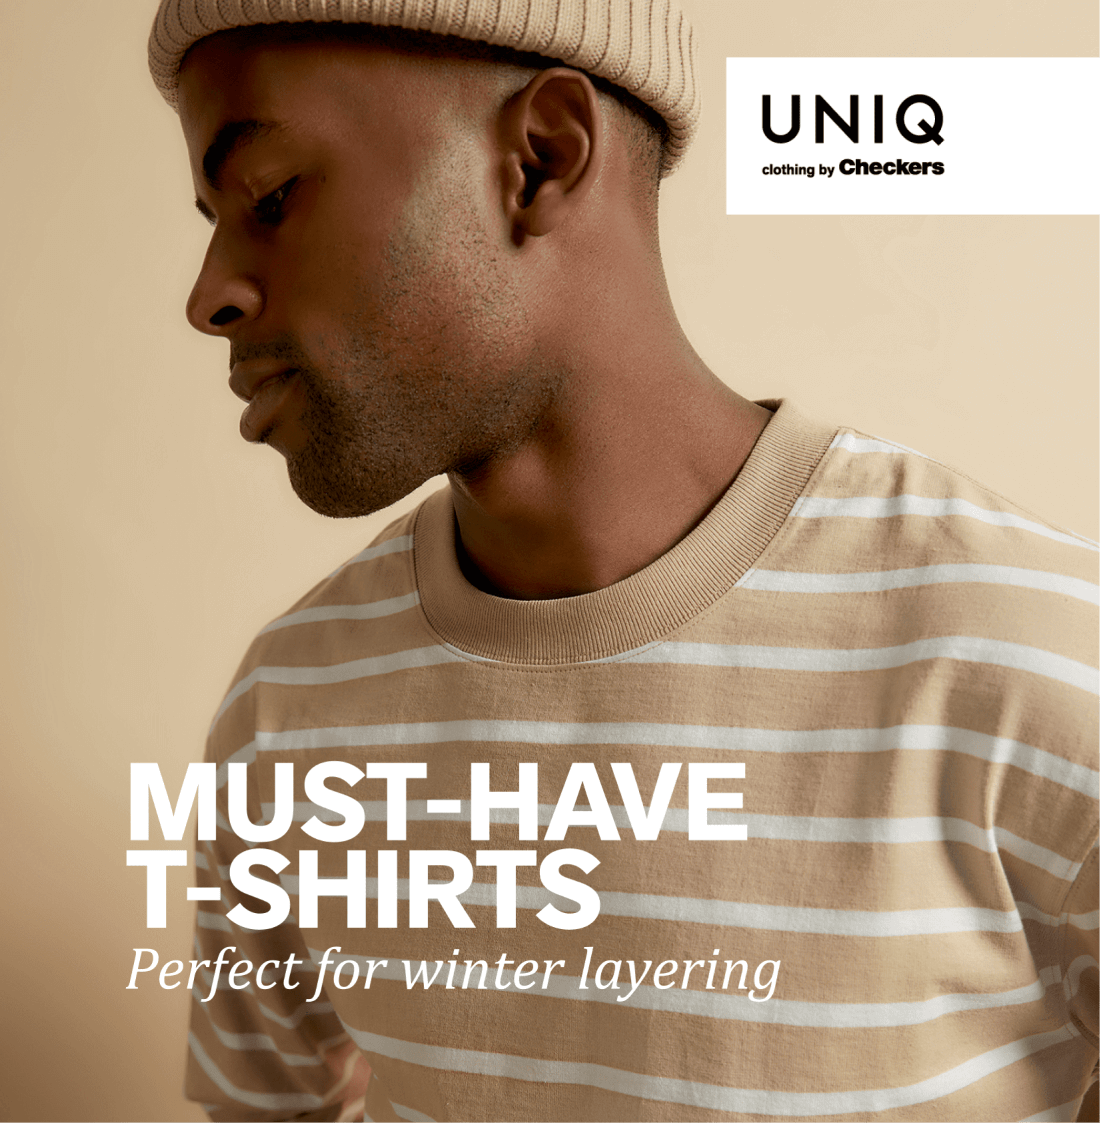 UNIQ Clothing by Checkers